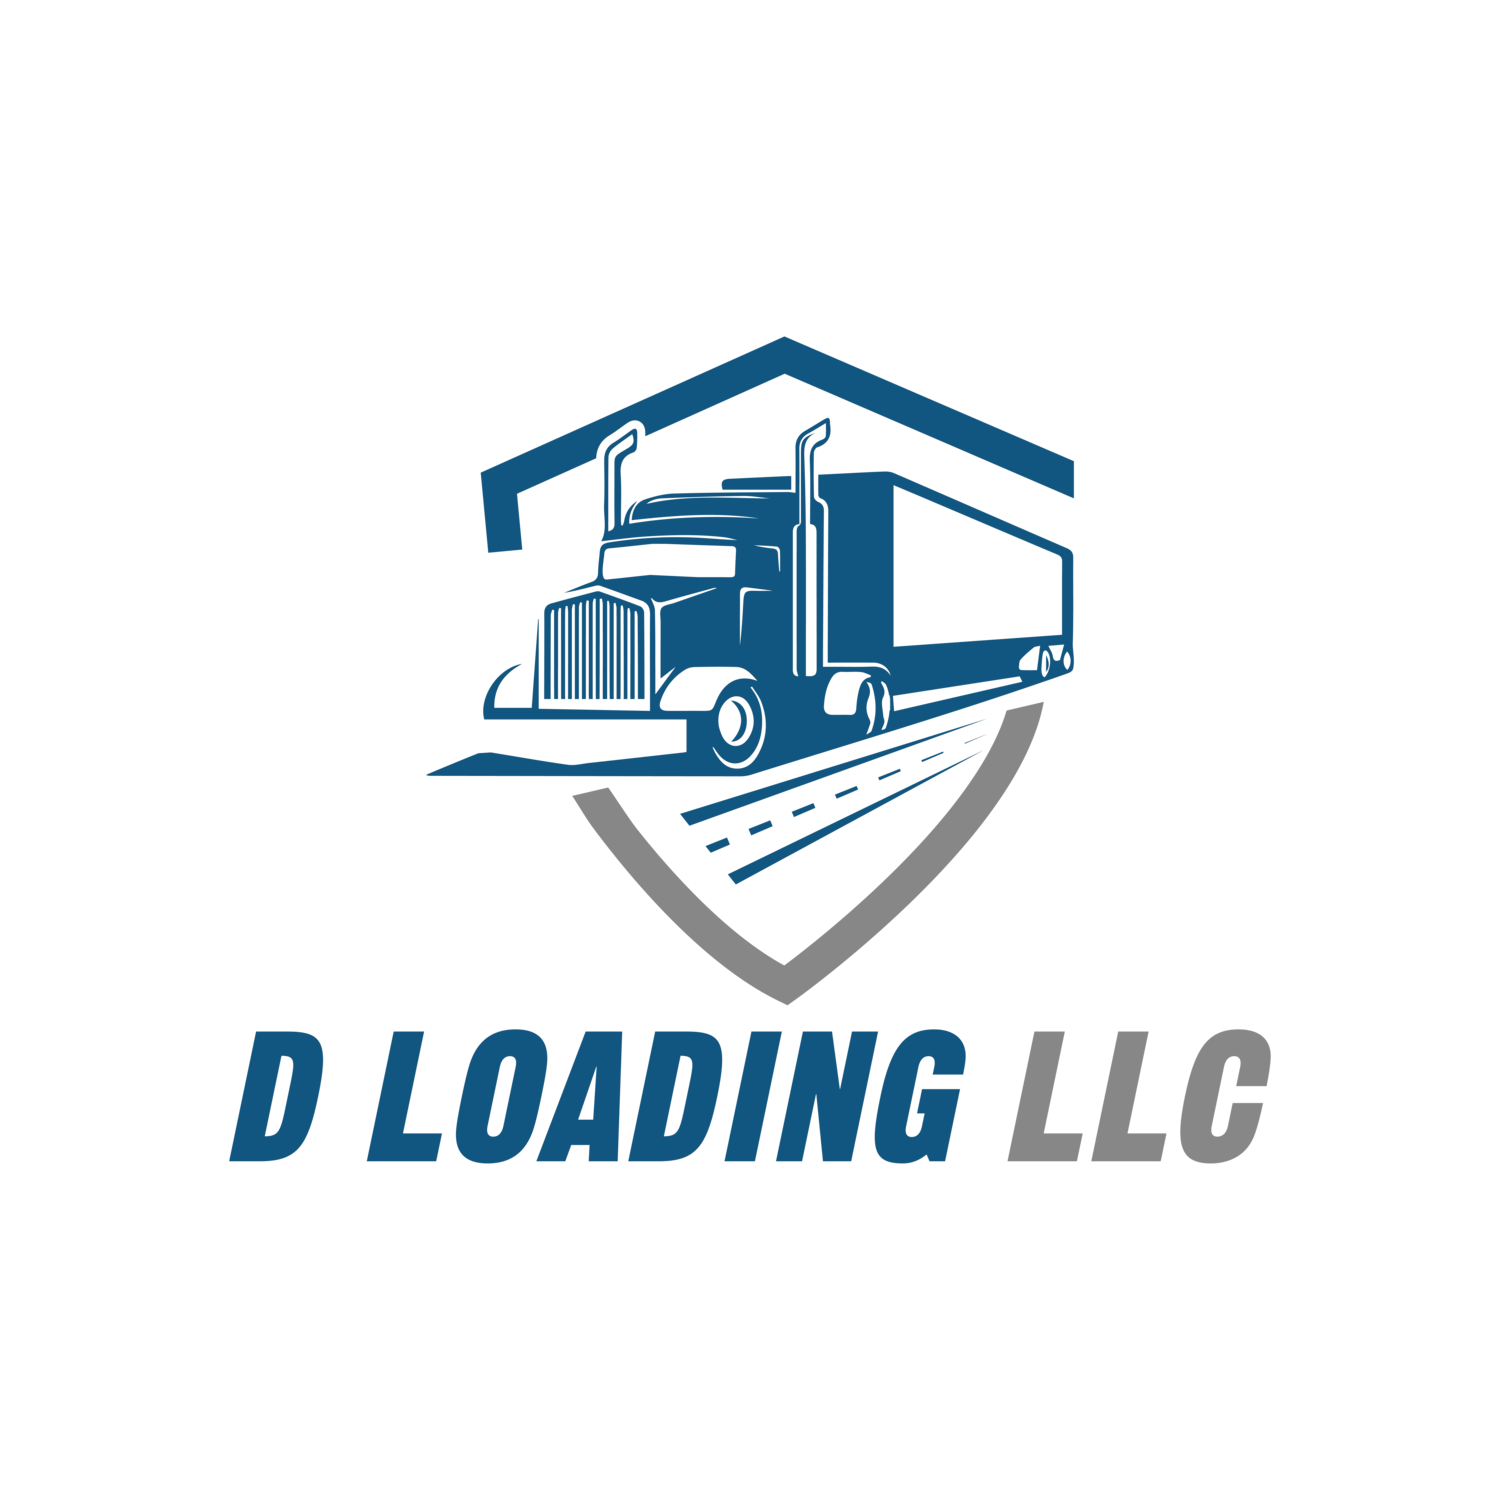 D Loading LLC 